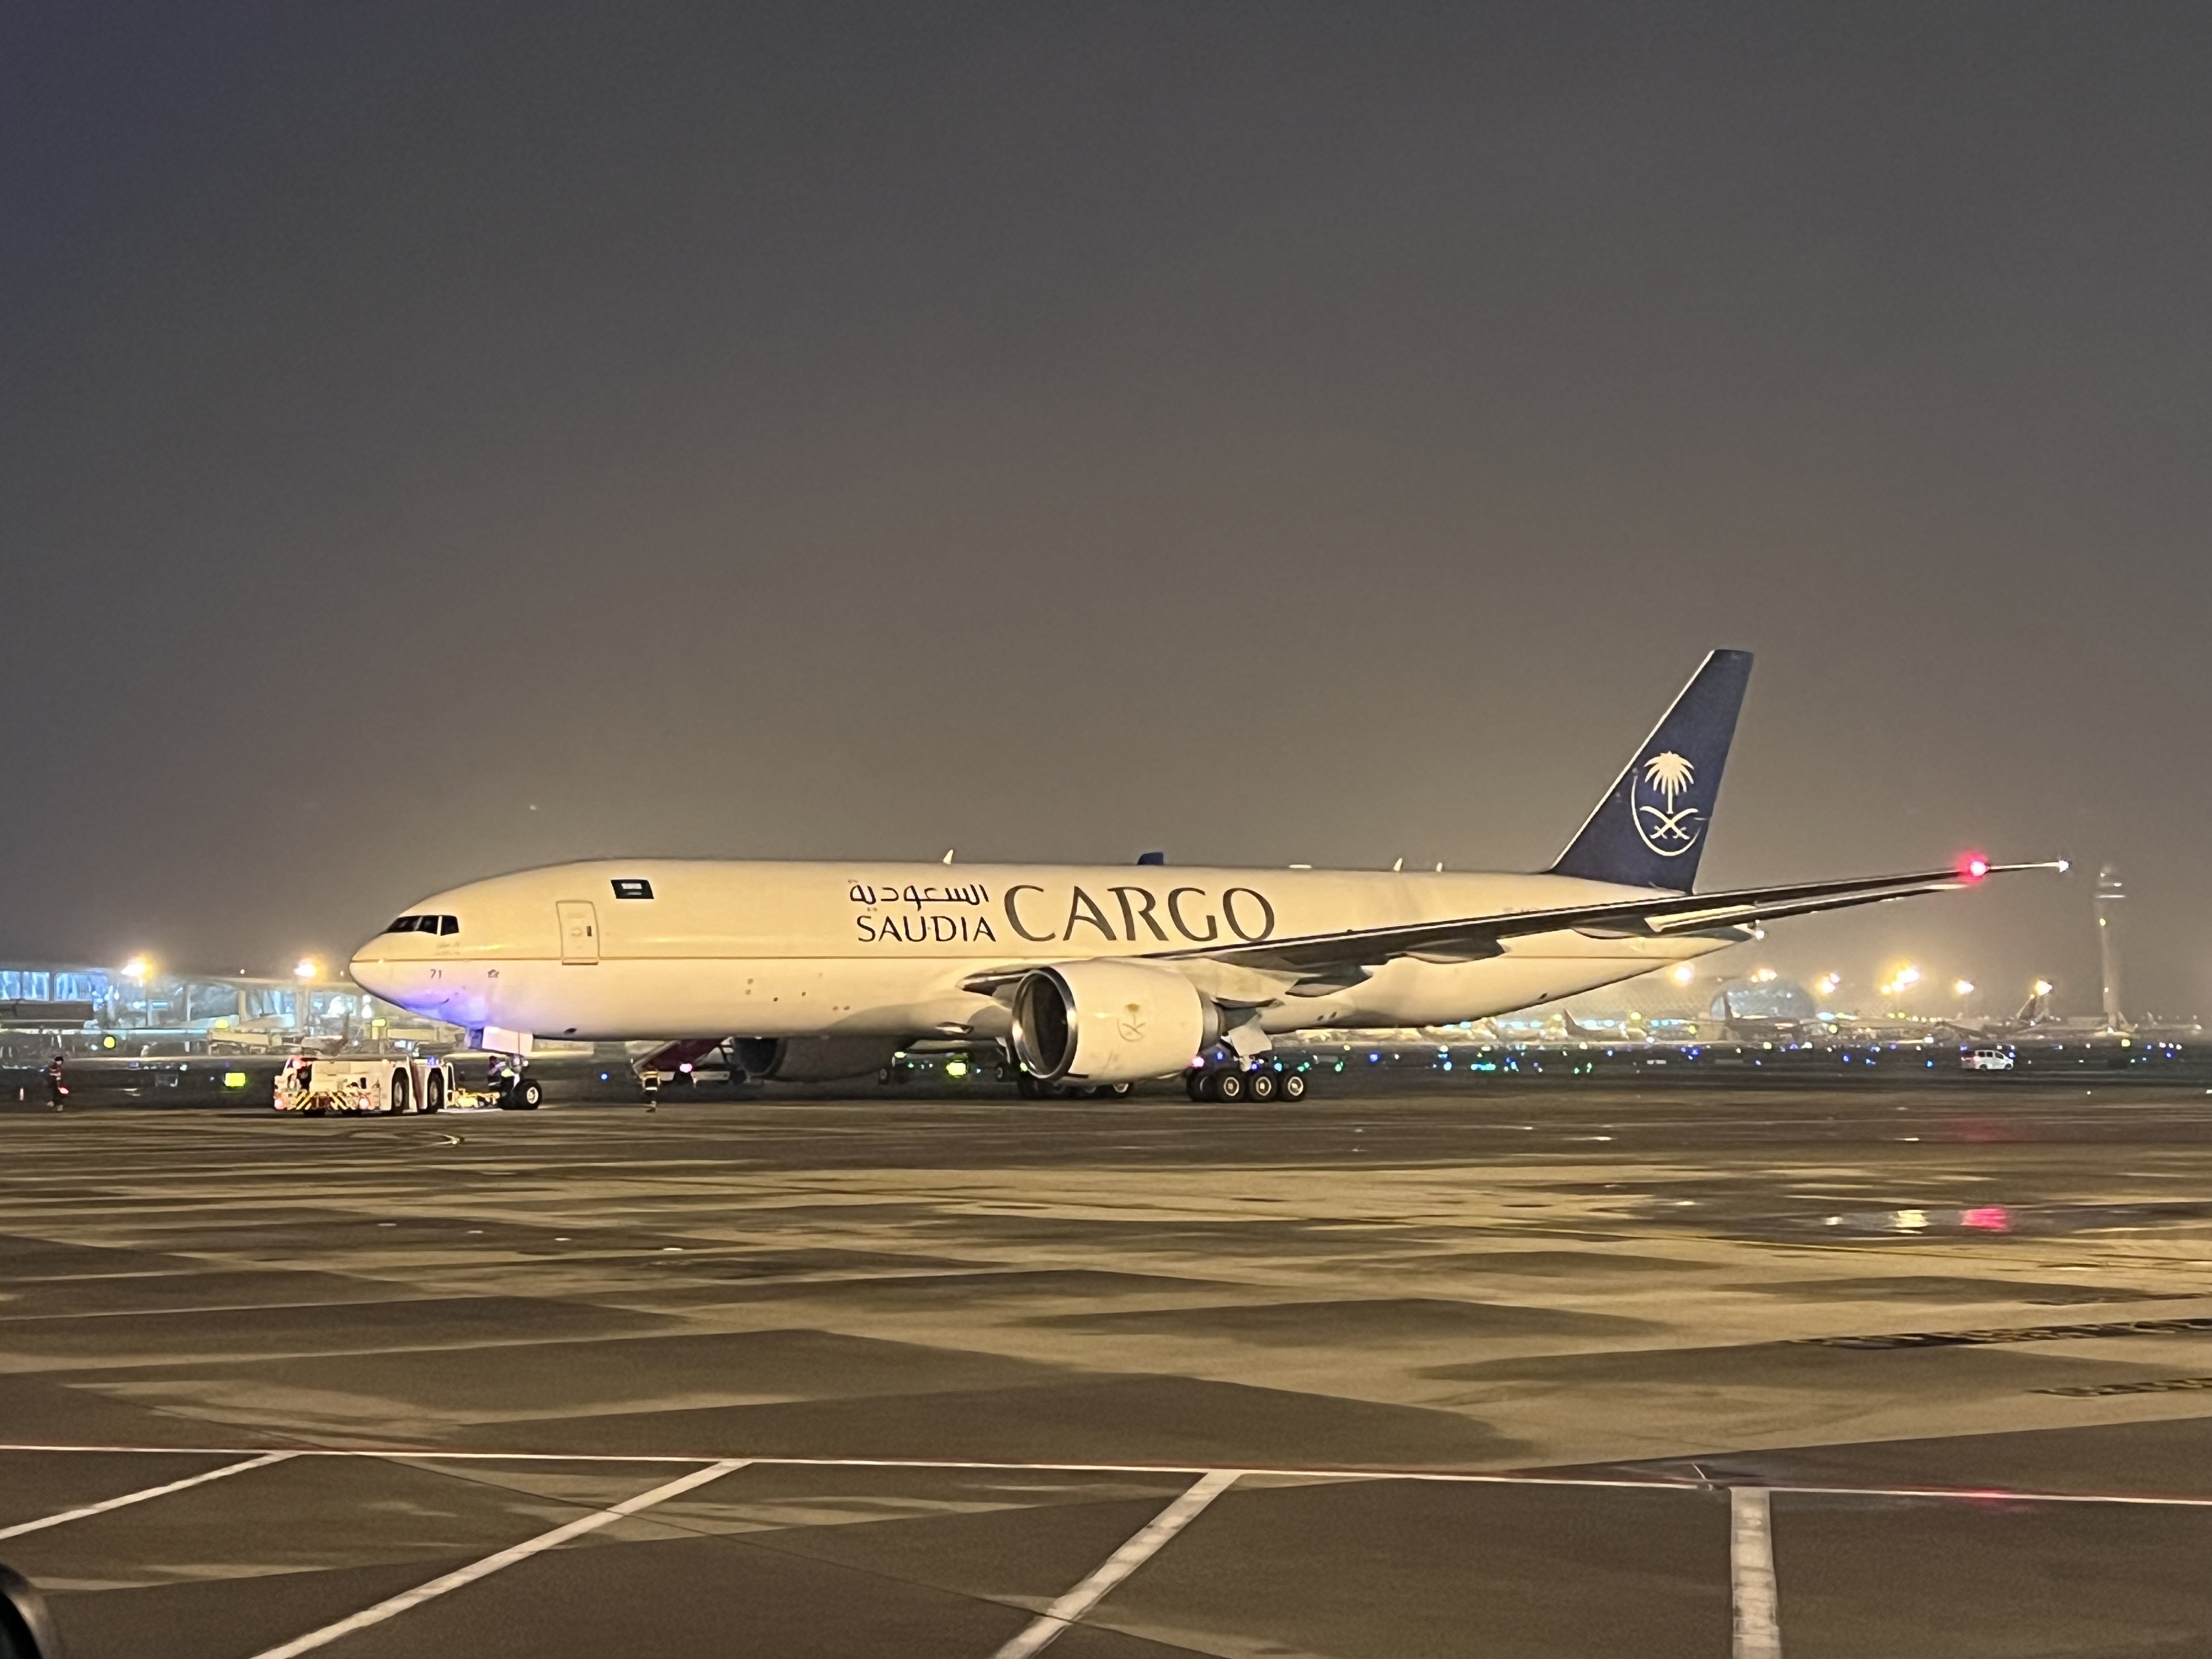 沙特阿拉伯航空首次在深圳机场开通航线